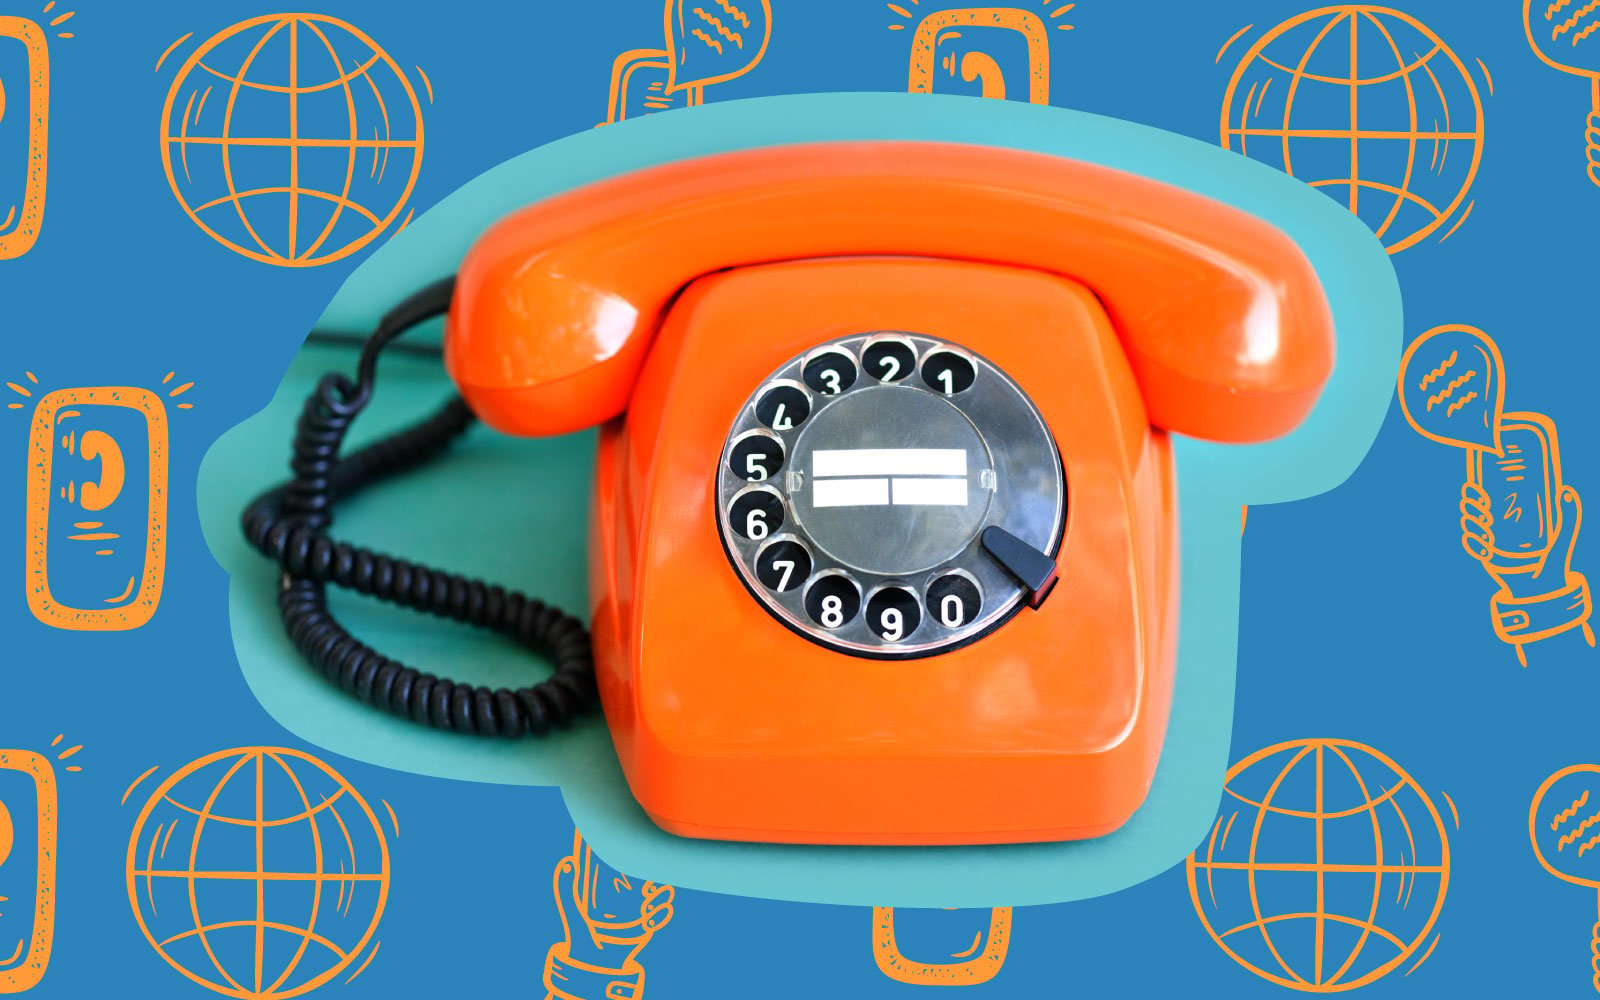 El teléfono fijo vivo: Yoigo te ofrece llamadas infinitas a fijos y móviles por 14 euros al mes |